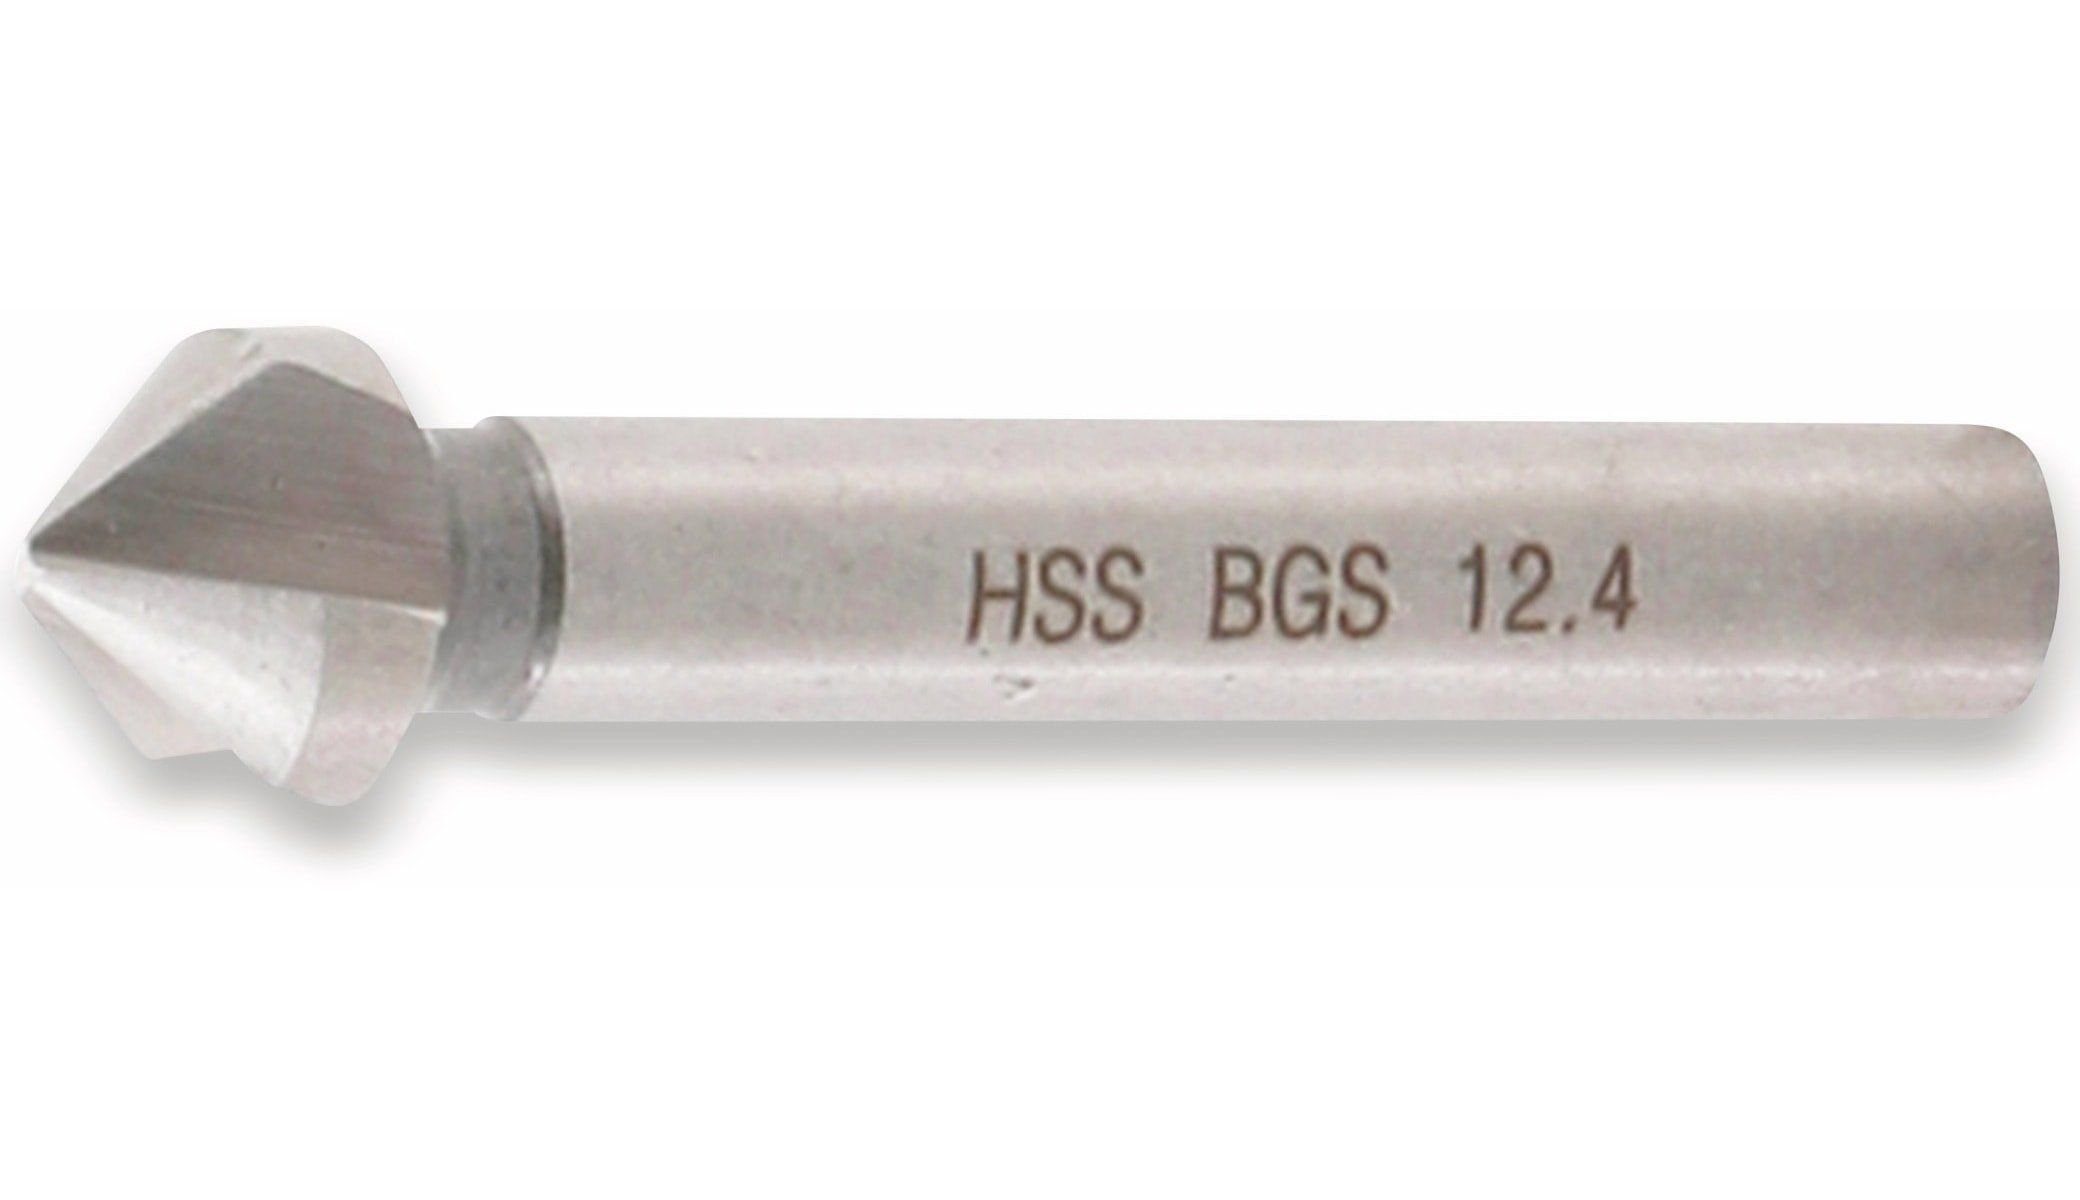 technic Kegelsenker Universalbohrer TECHNIC 12,4 Ø BGS 335 mm BGS HSS DIN Form